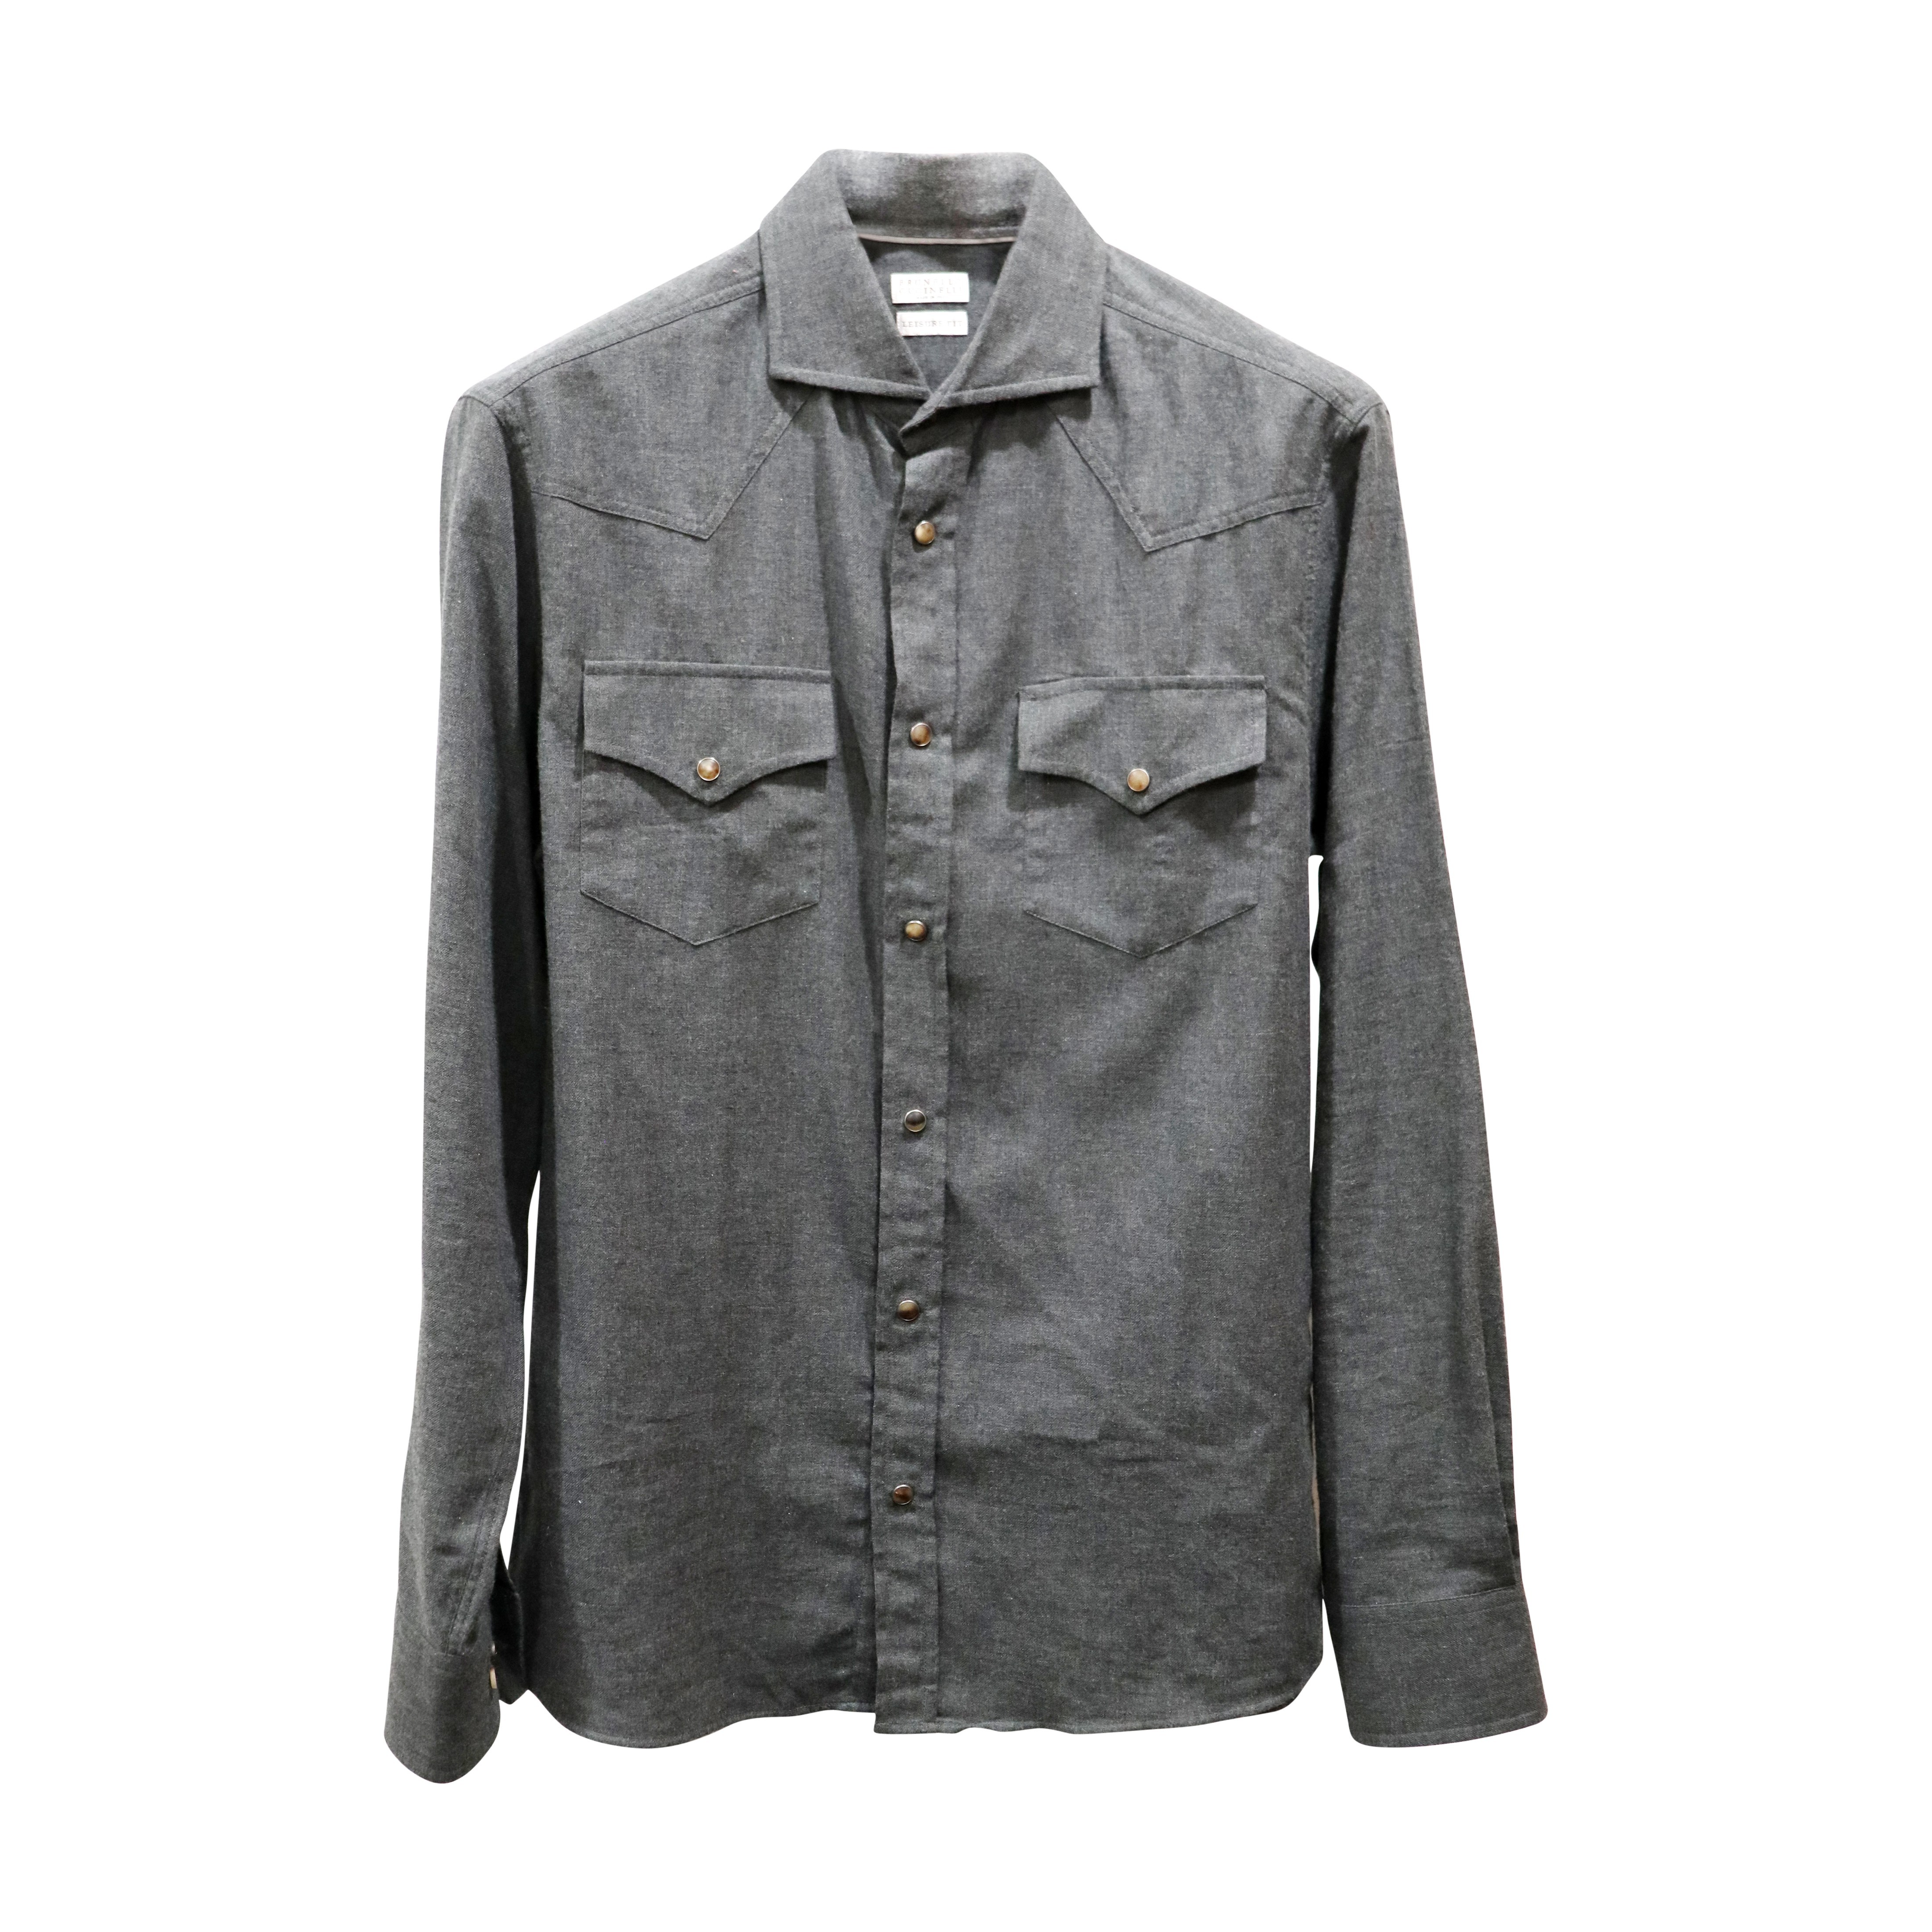 Western Shirt - Cotton Flannel - 1